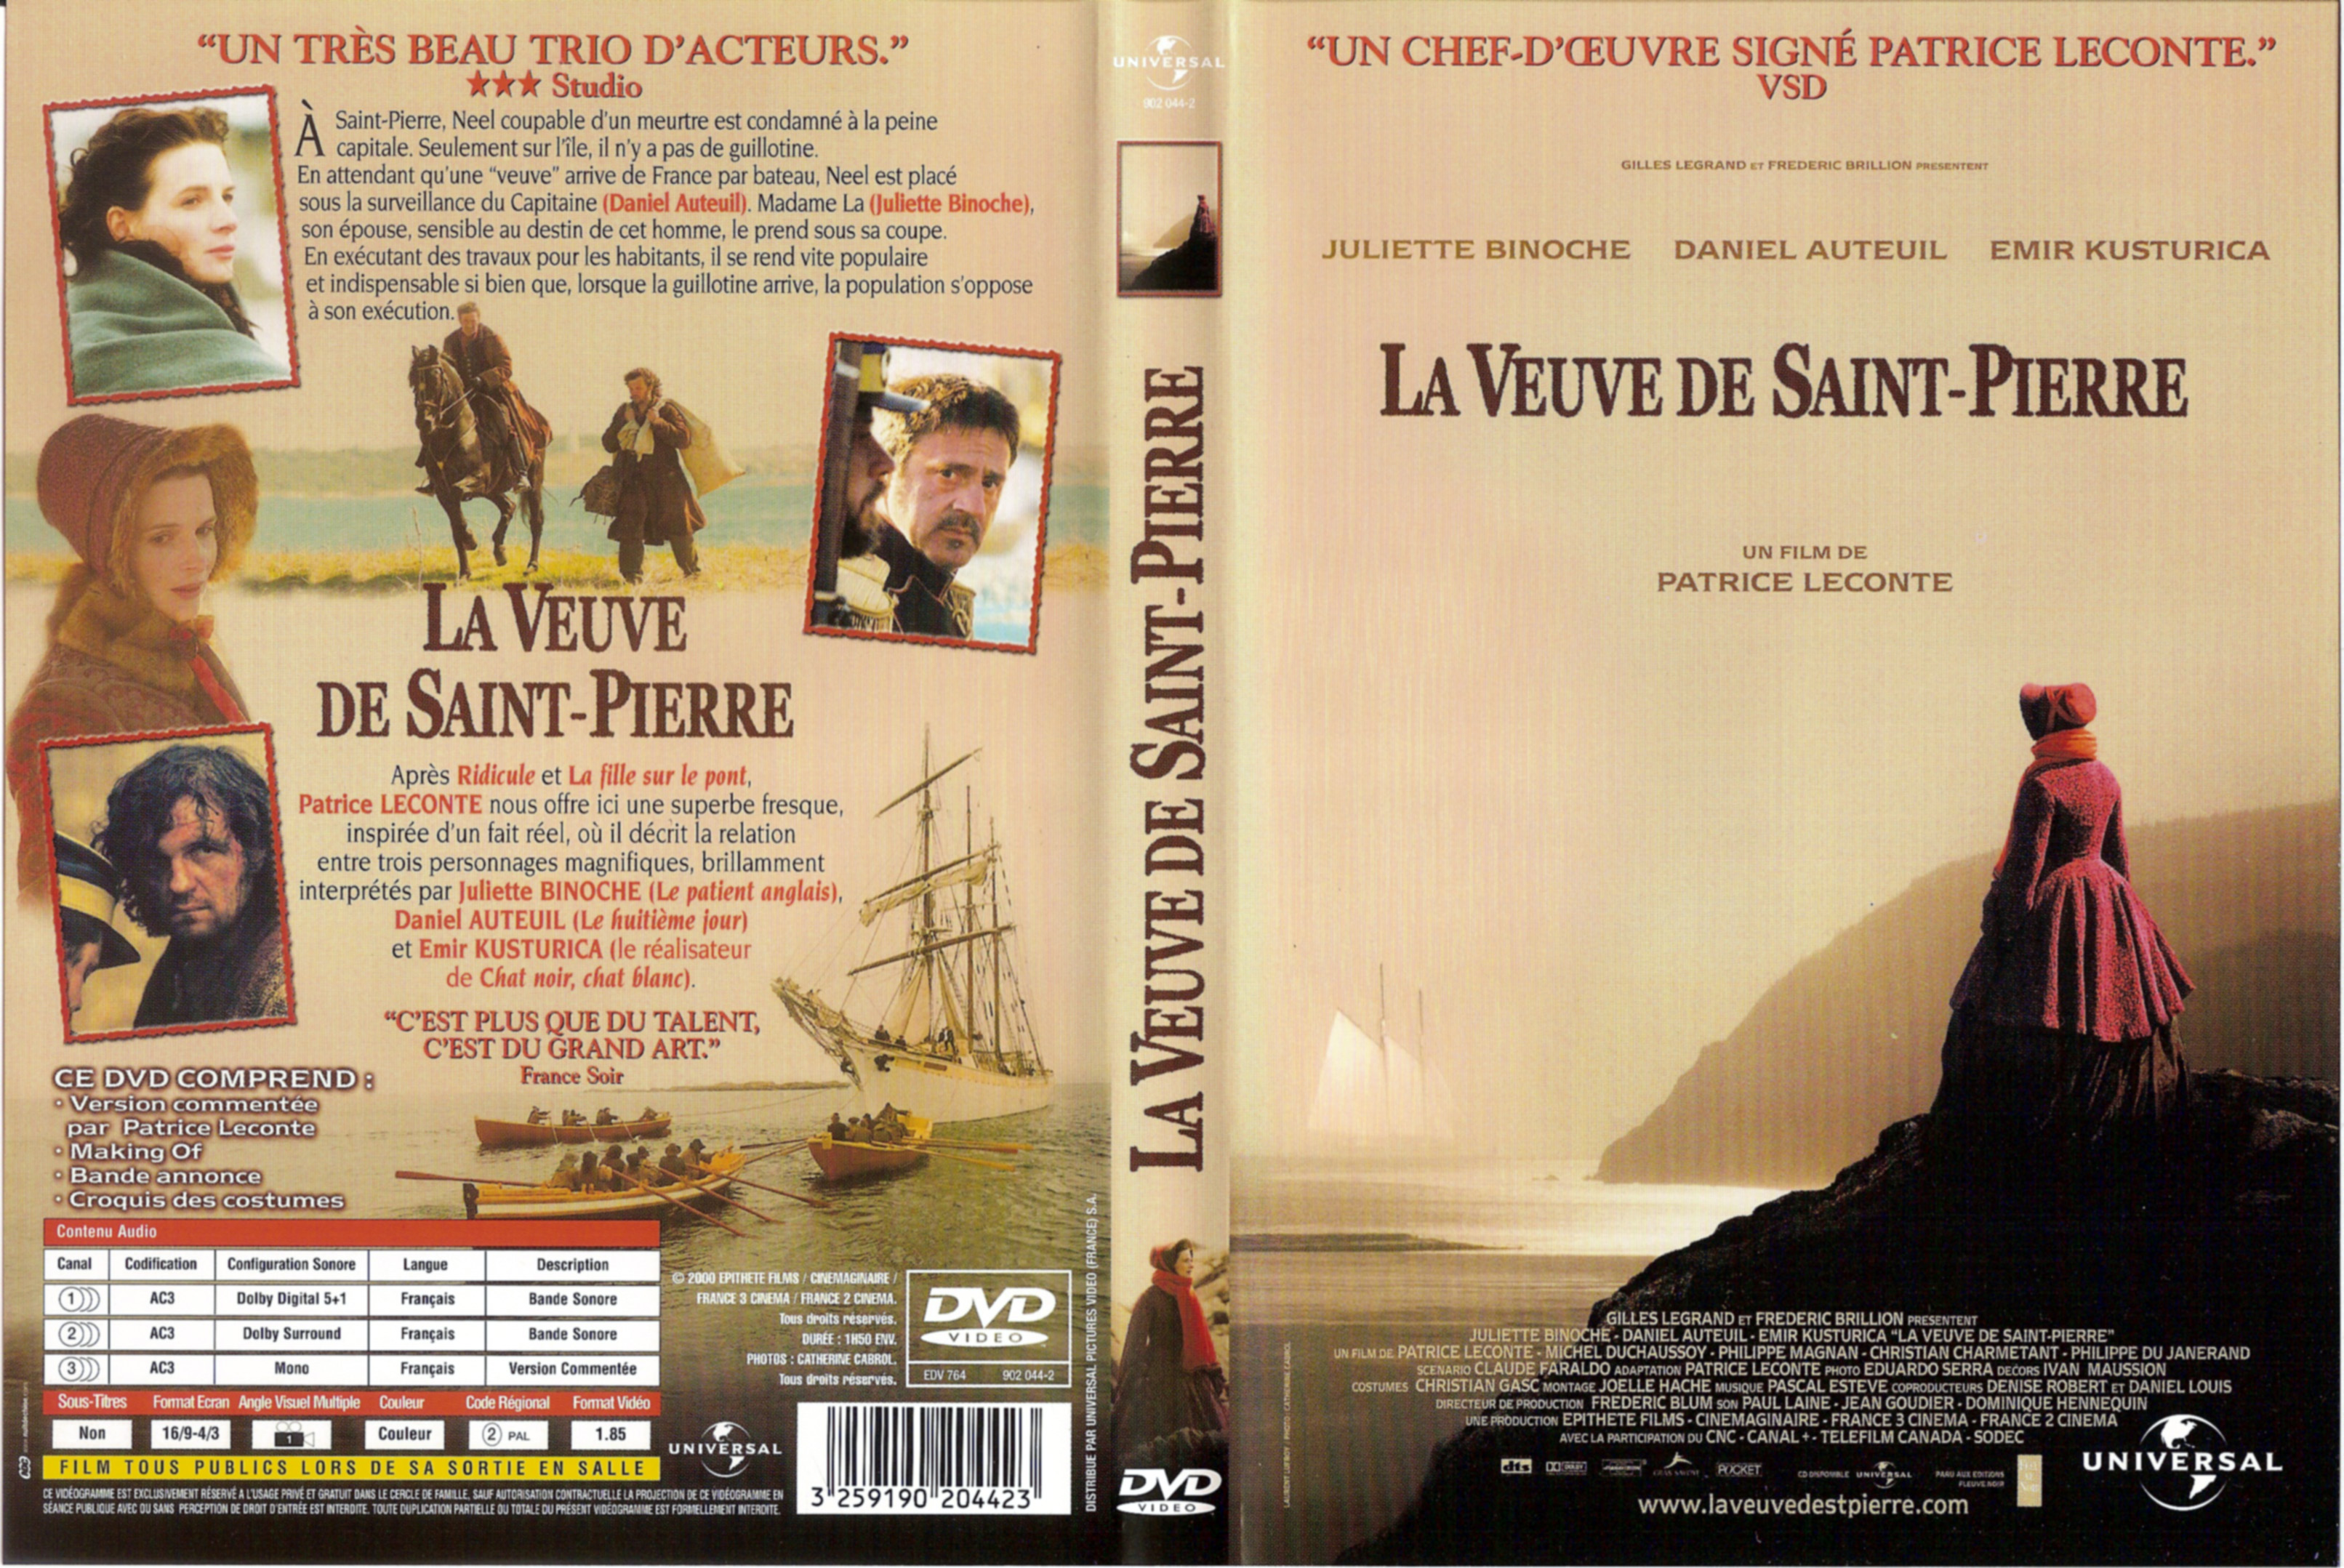 Jaquette DVD La veuve de Saint-Pierre